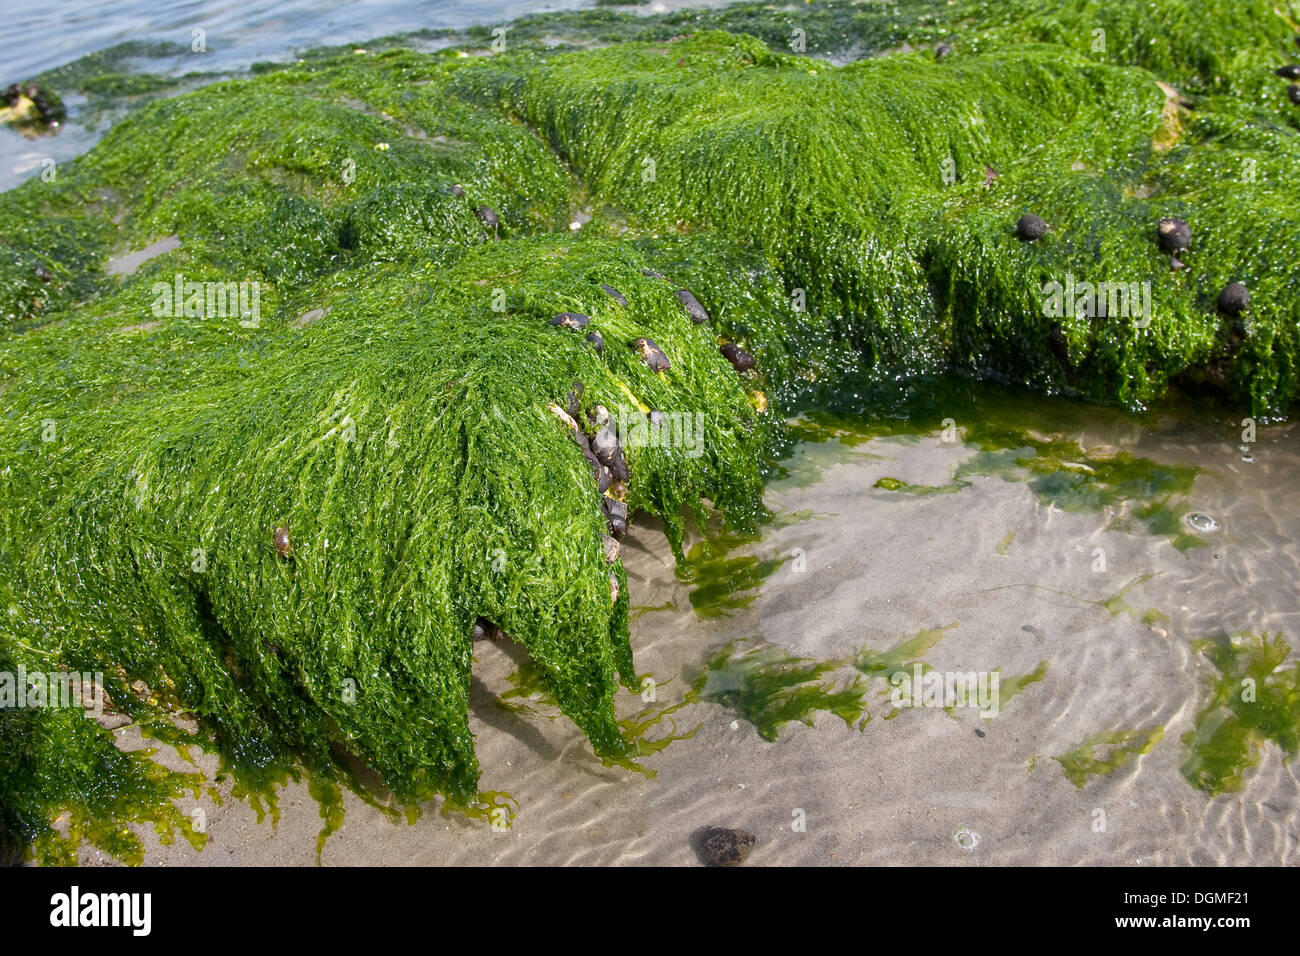 Le alghe, gutweed, gut-erbaccia, erba-kelp, laminaria, Flacher Darmtang, Grünalge, Tang, Enteromorpha compressa, Enteromorpha intestina Foto Stock